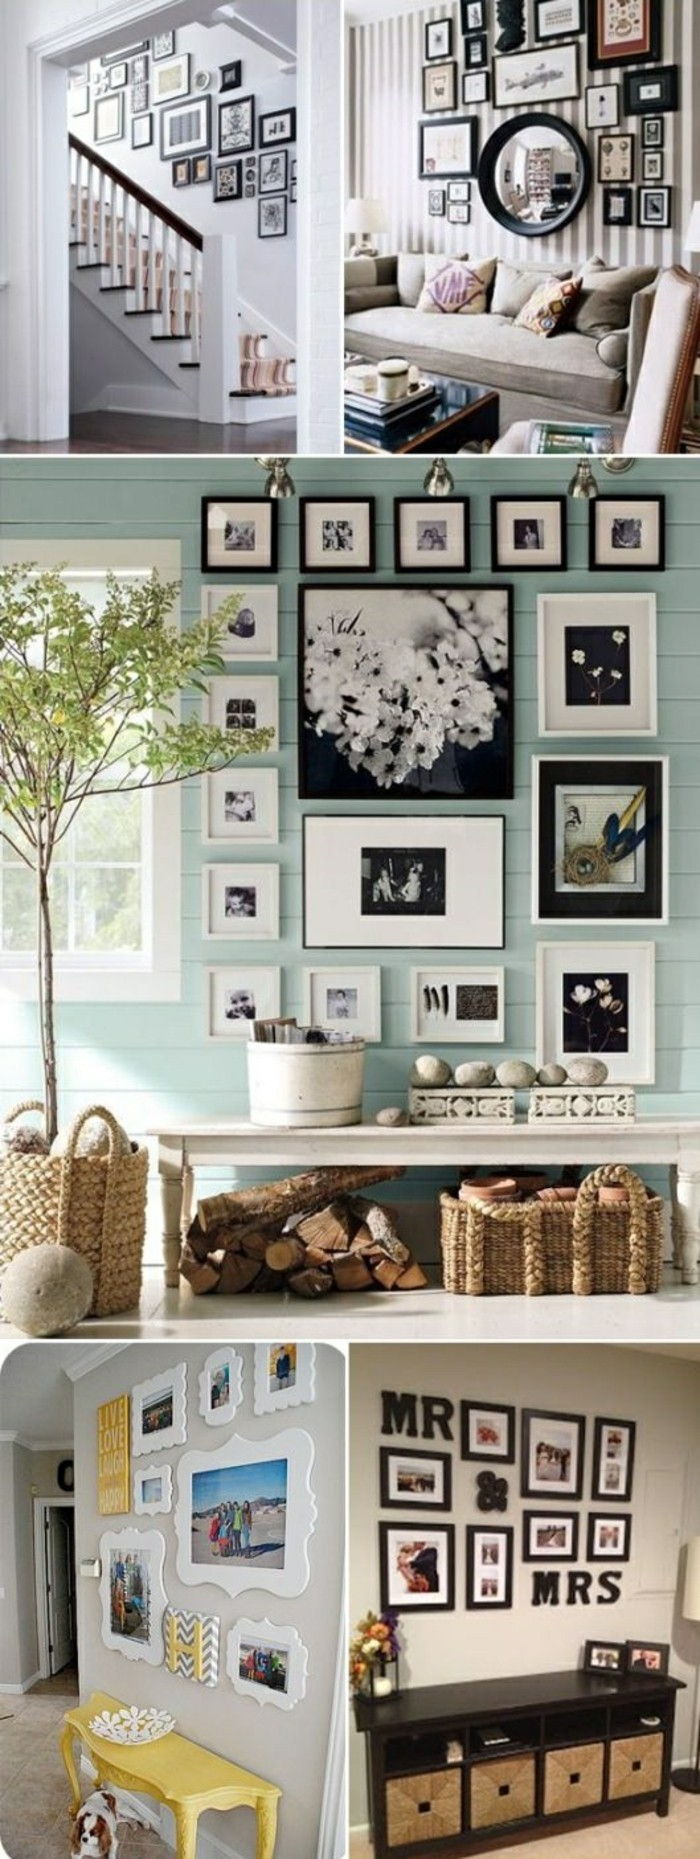 Cornice-wall-tree-scale-divano-cabinet-intrecciato-basket